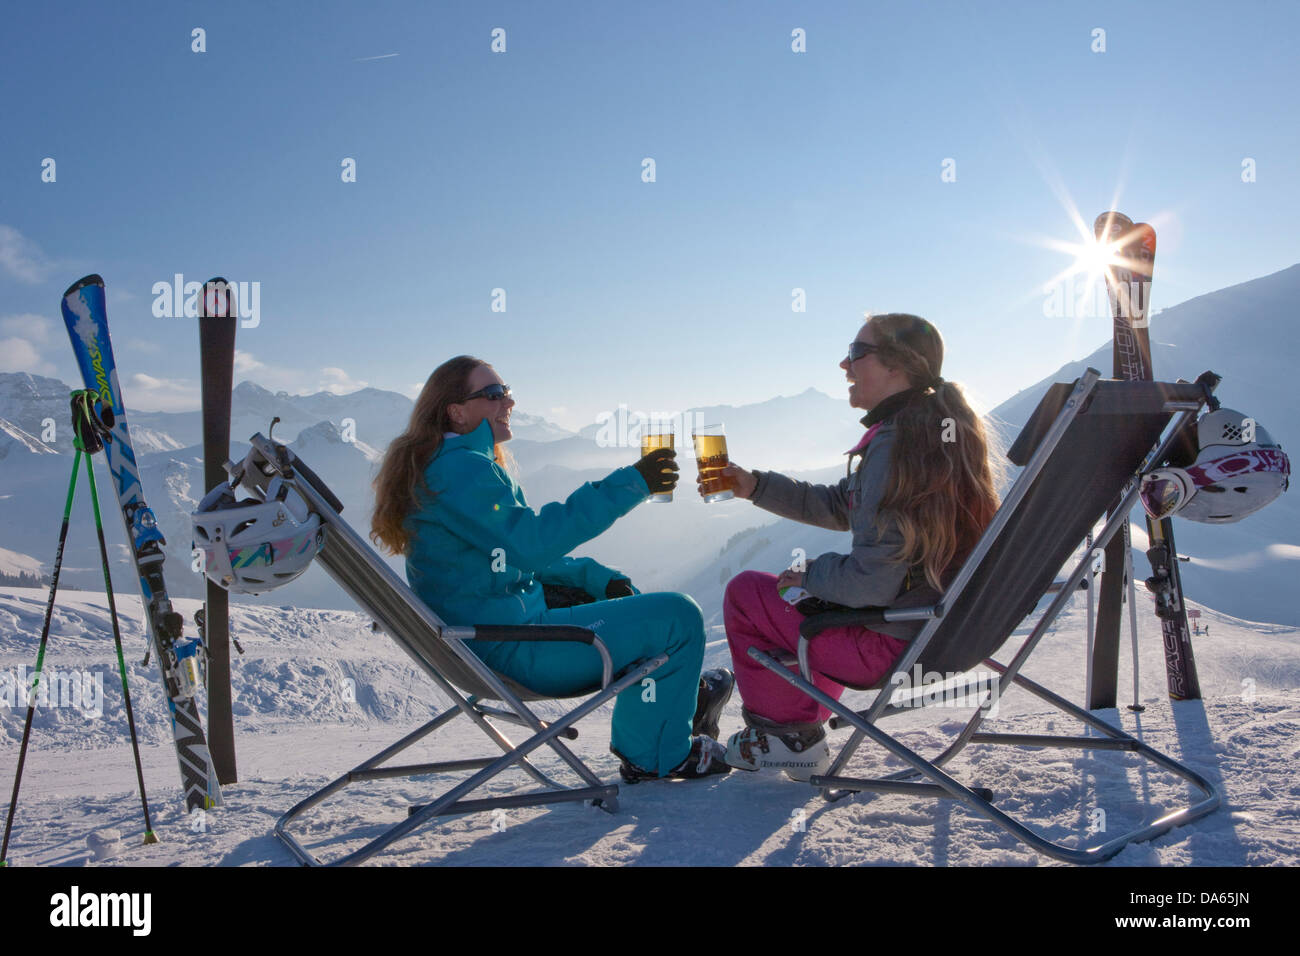 Pausa, Stop, sedia a sdraio, area sciistica, Adelboden, inverno, il cantone di Berna Oberland Bernese, donne, bere, turismo, vacanze, Swi Foto Stock